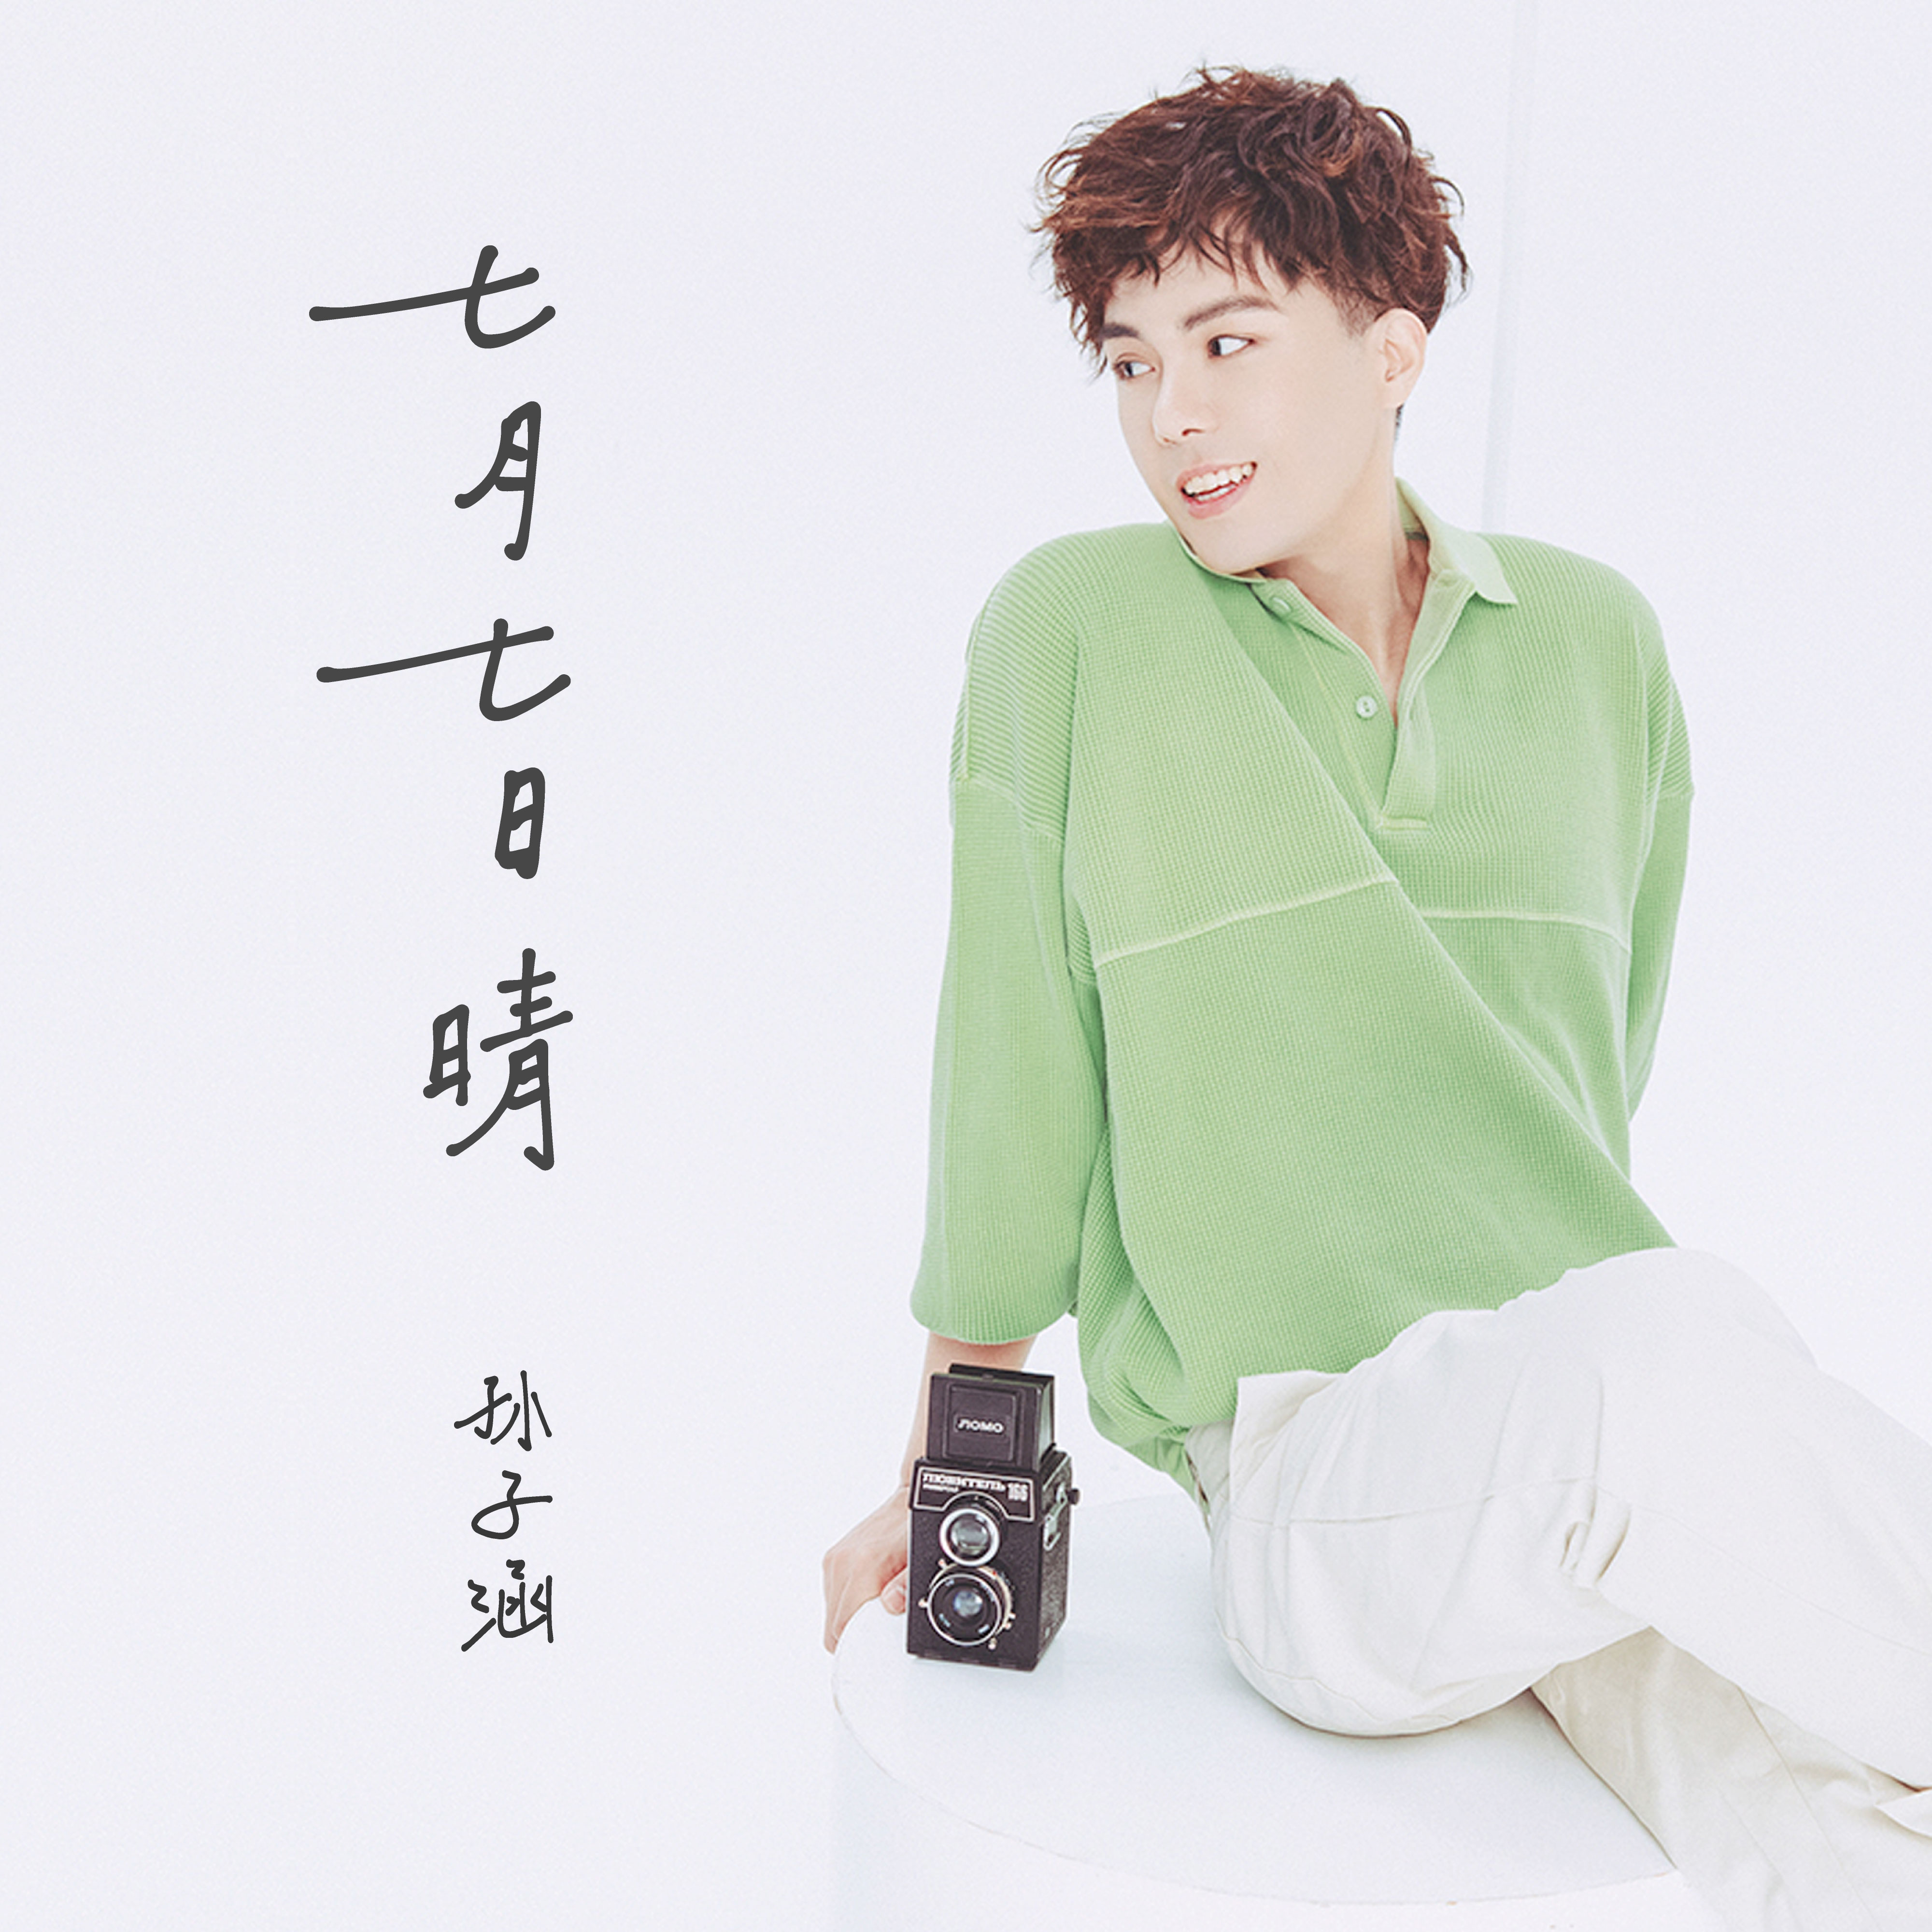 ‎《七月七日晴 (温柔女声版) - Single》- 巧克林的专辑 - Apple Music